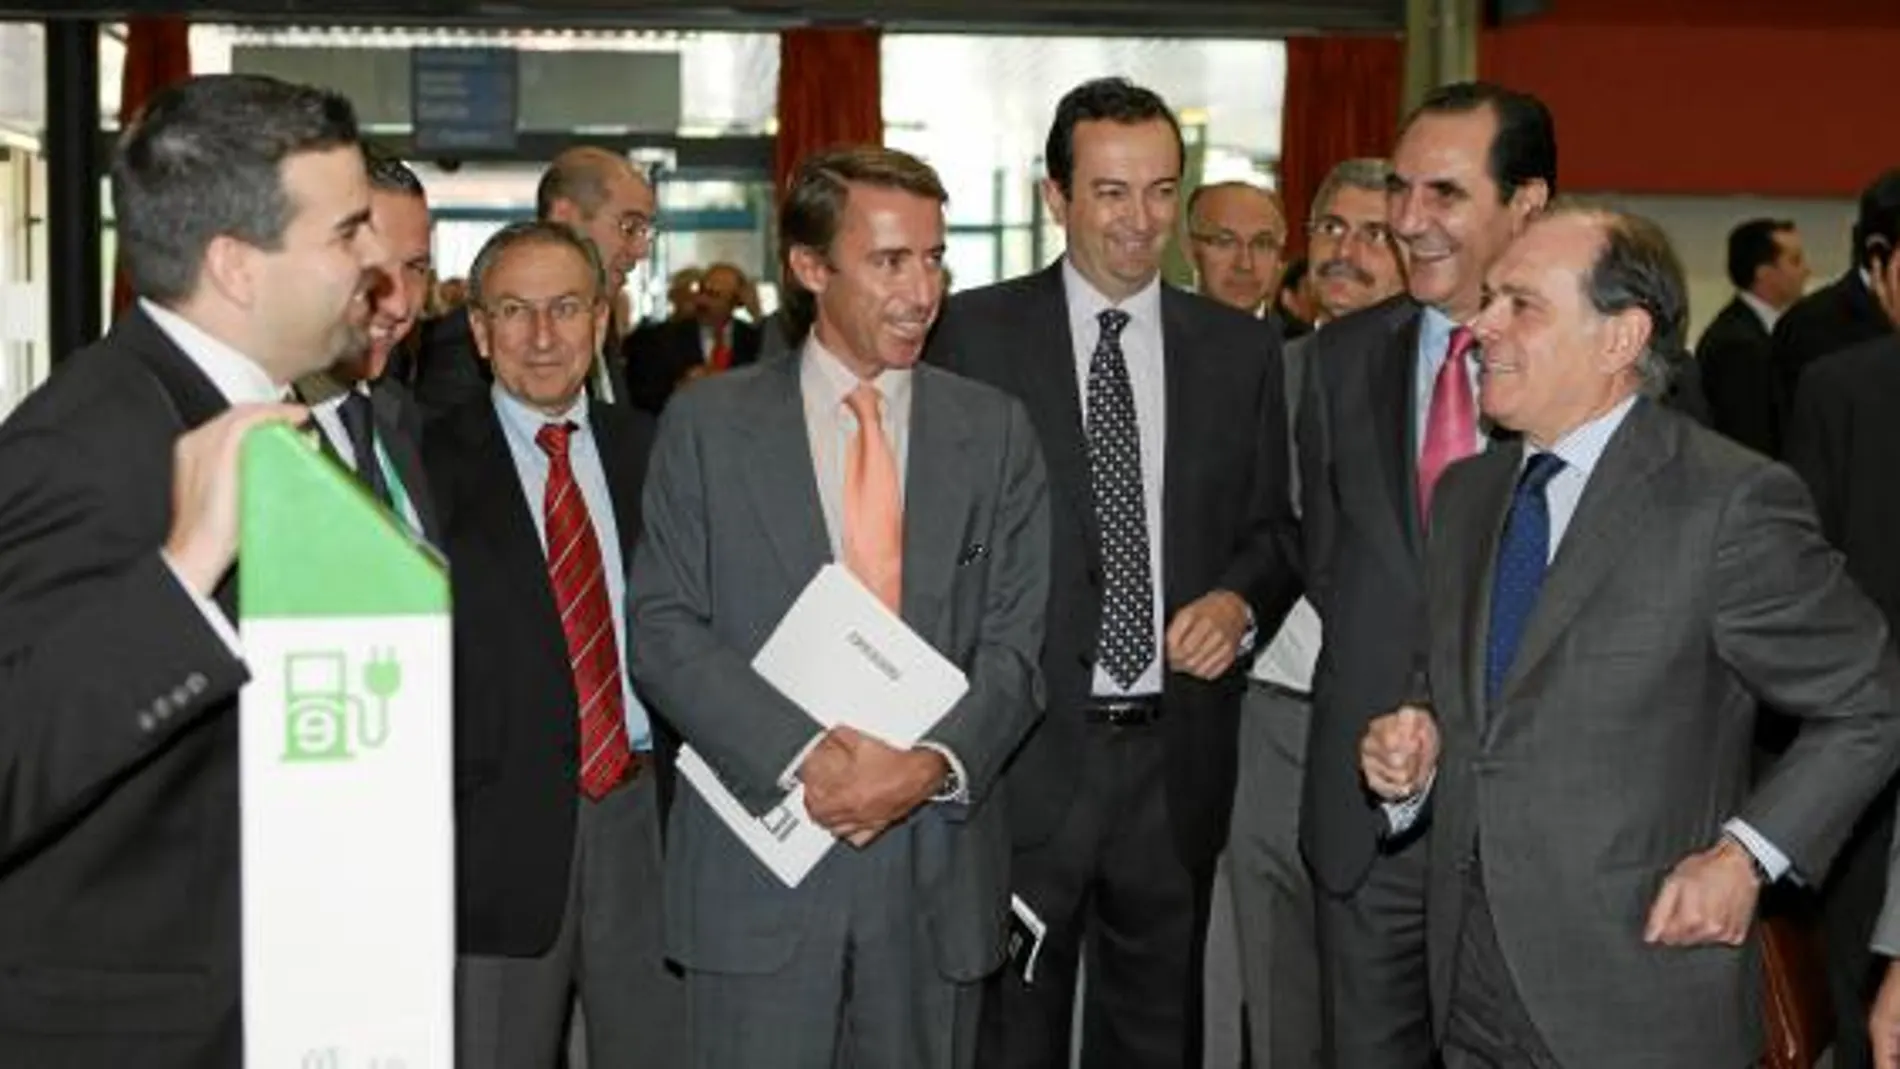 Tomás Villanueva junto a José Rolando Álvarez, Carlos Escudero y Alfonso Beltrán visitan uno de los expositores del II Salón del Vehículo que se celebra en Valladolid